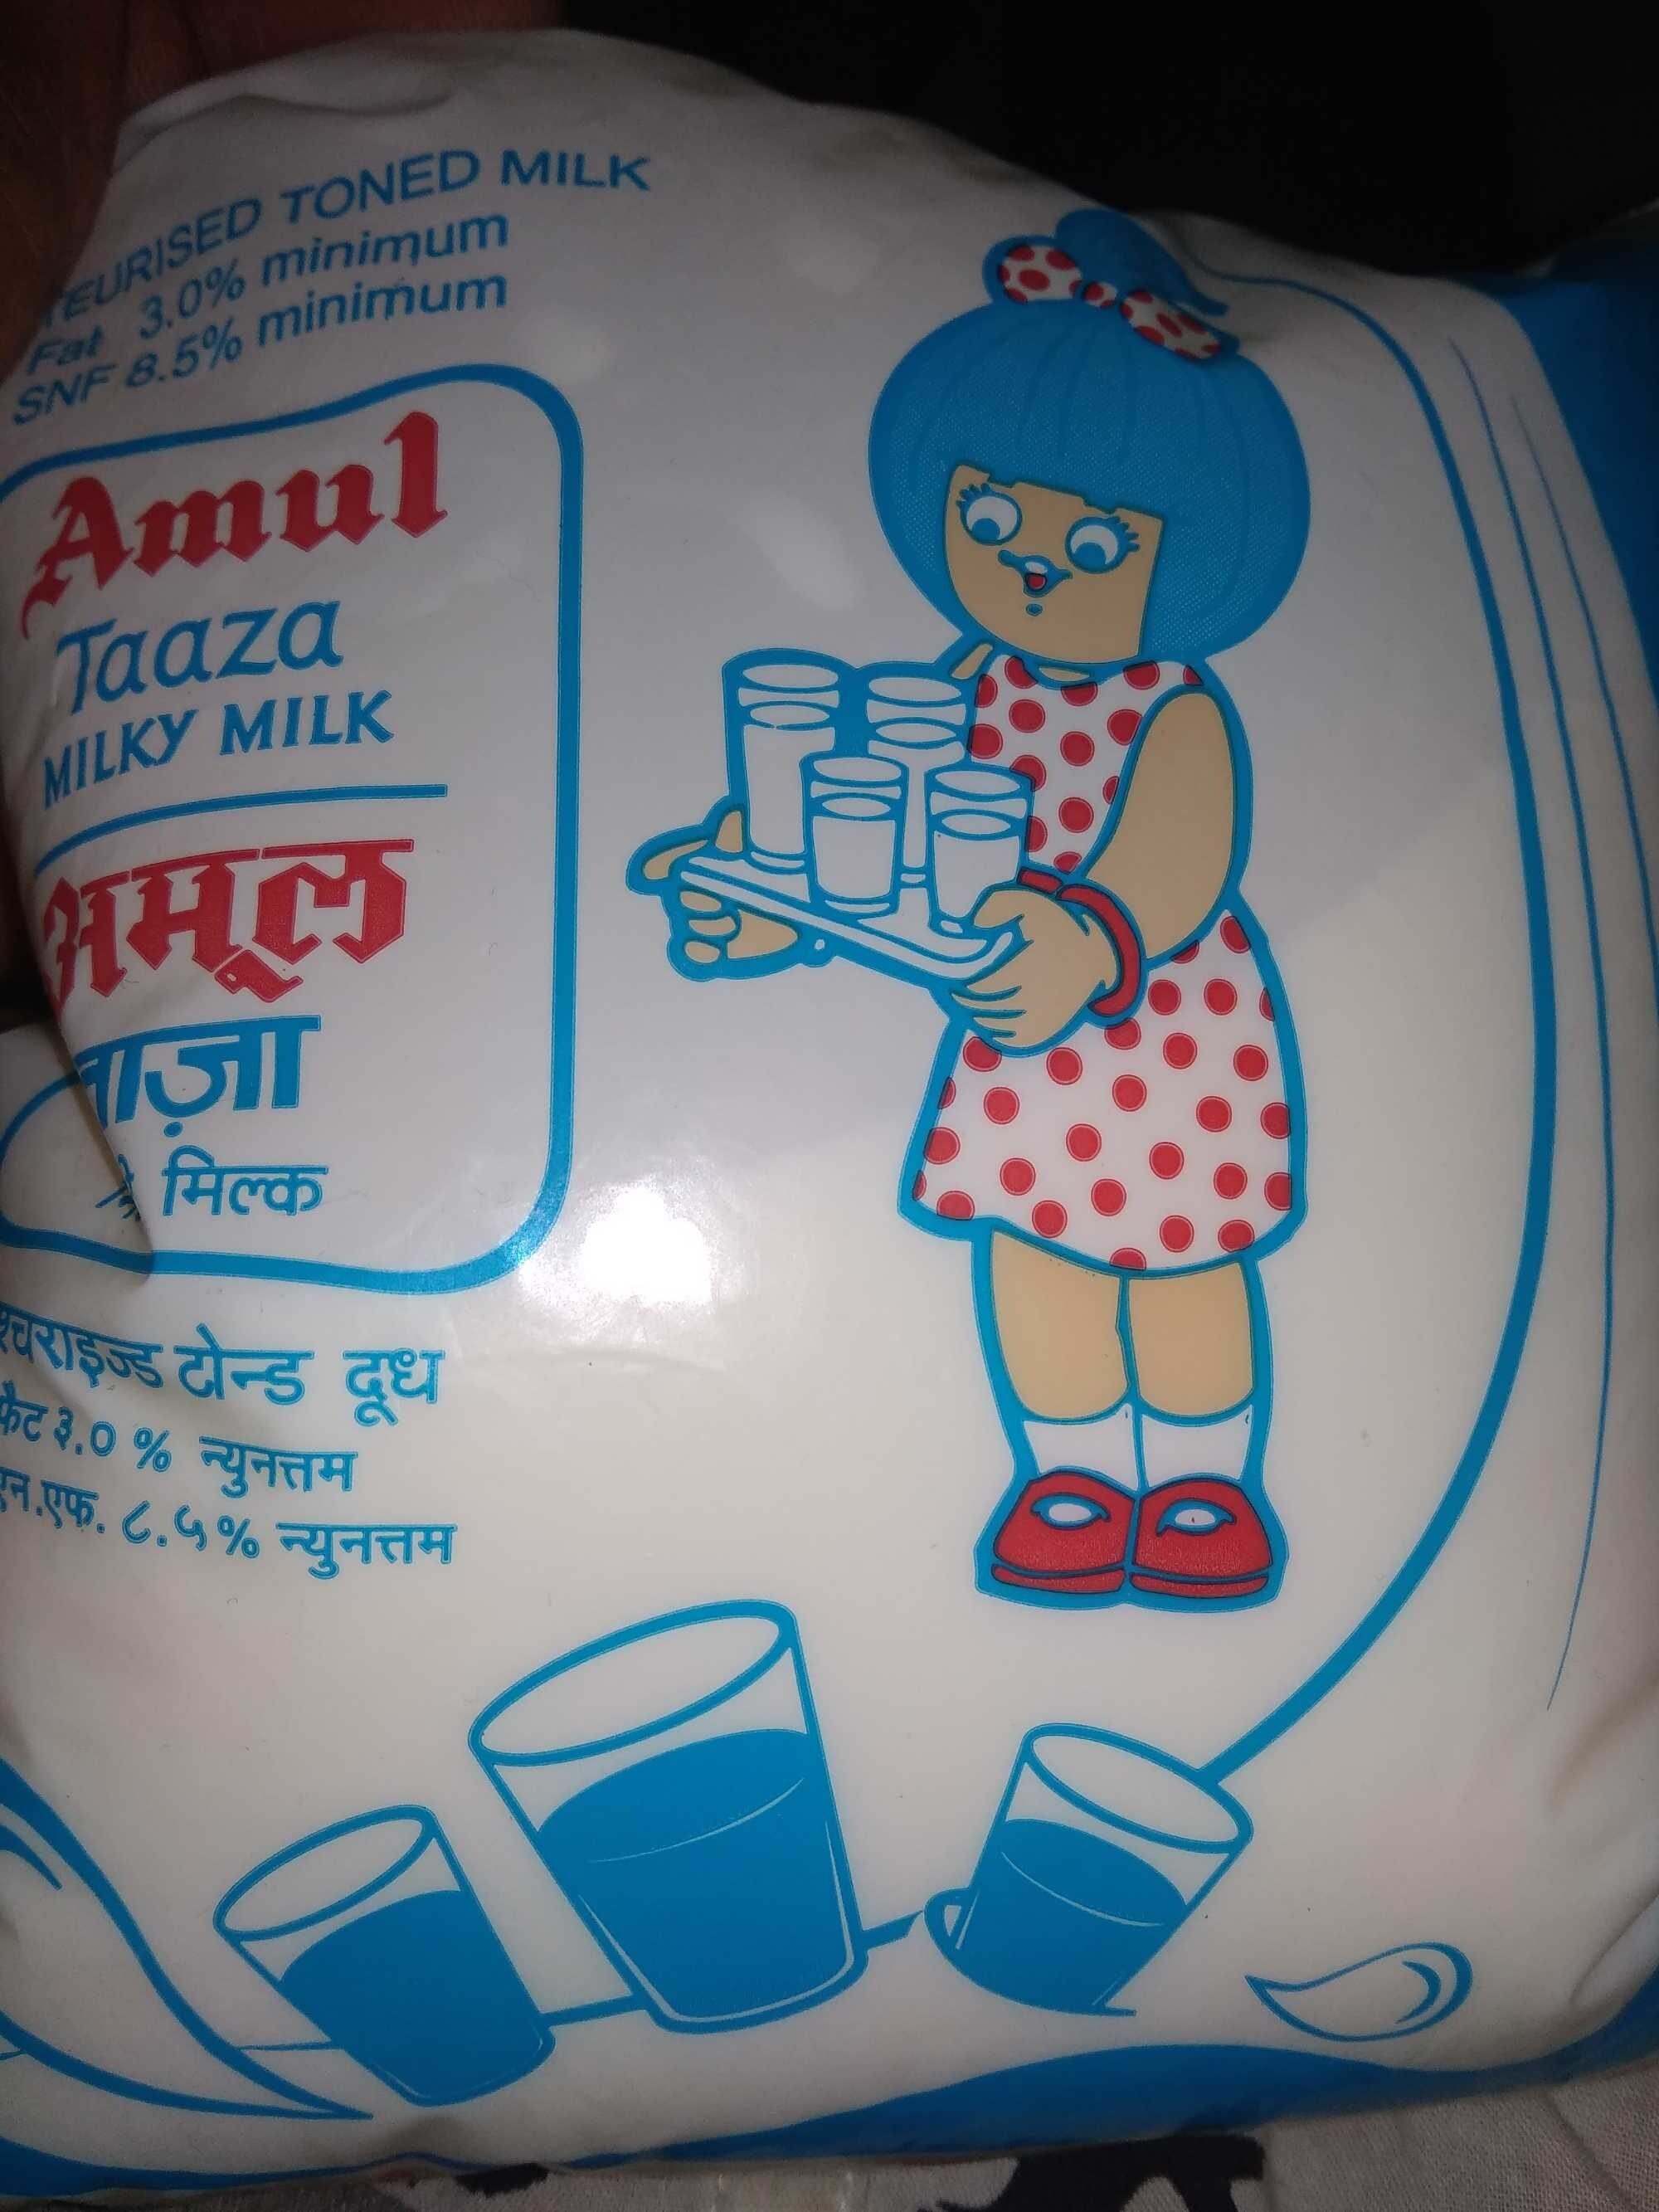 amul taaza toned milk - Product